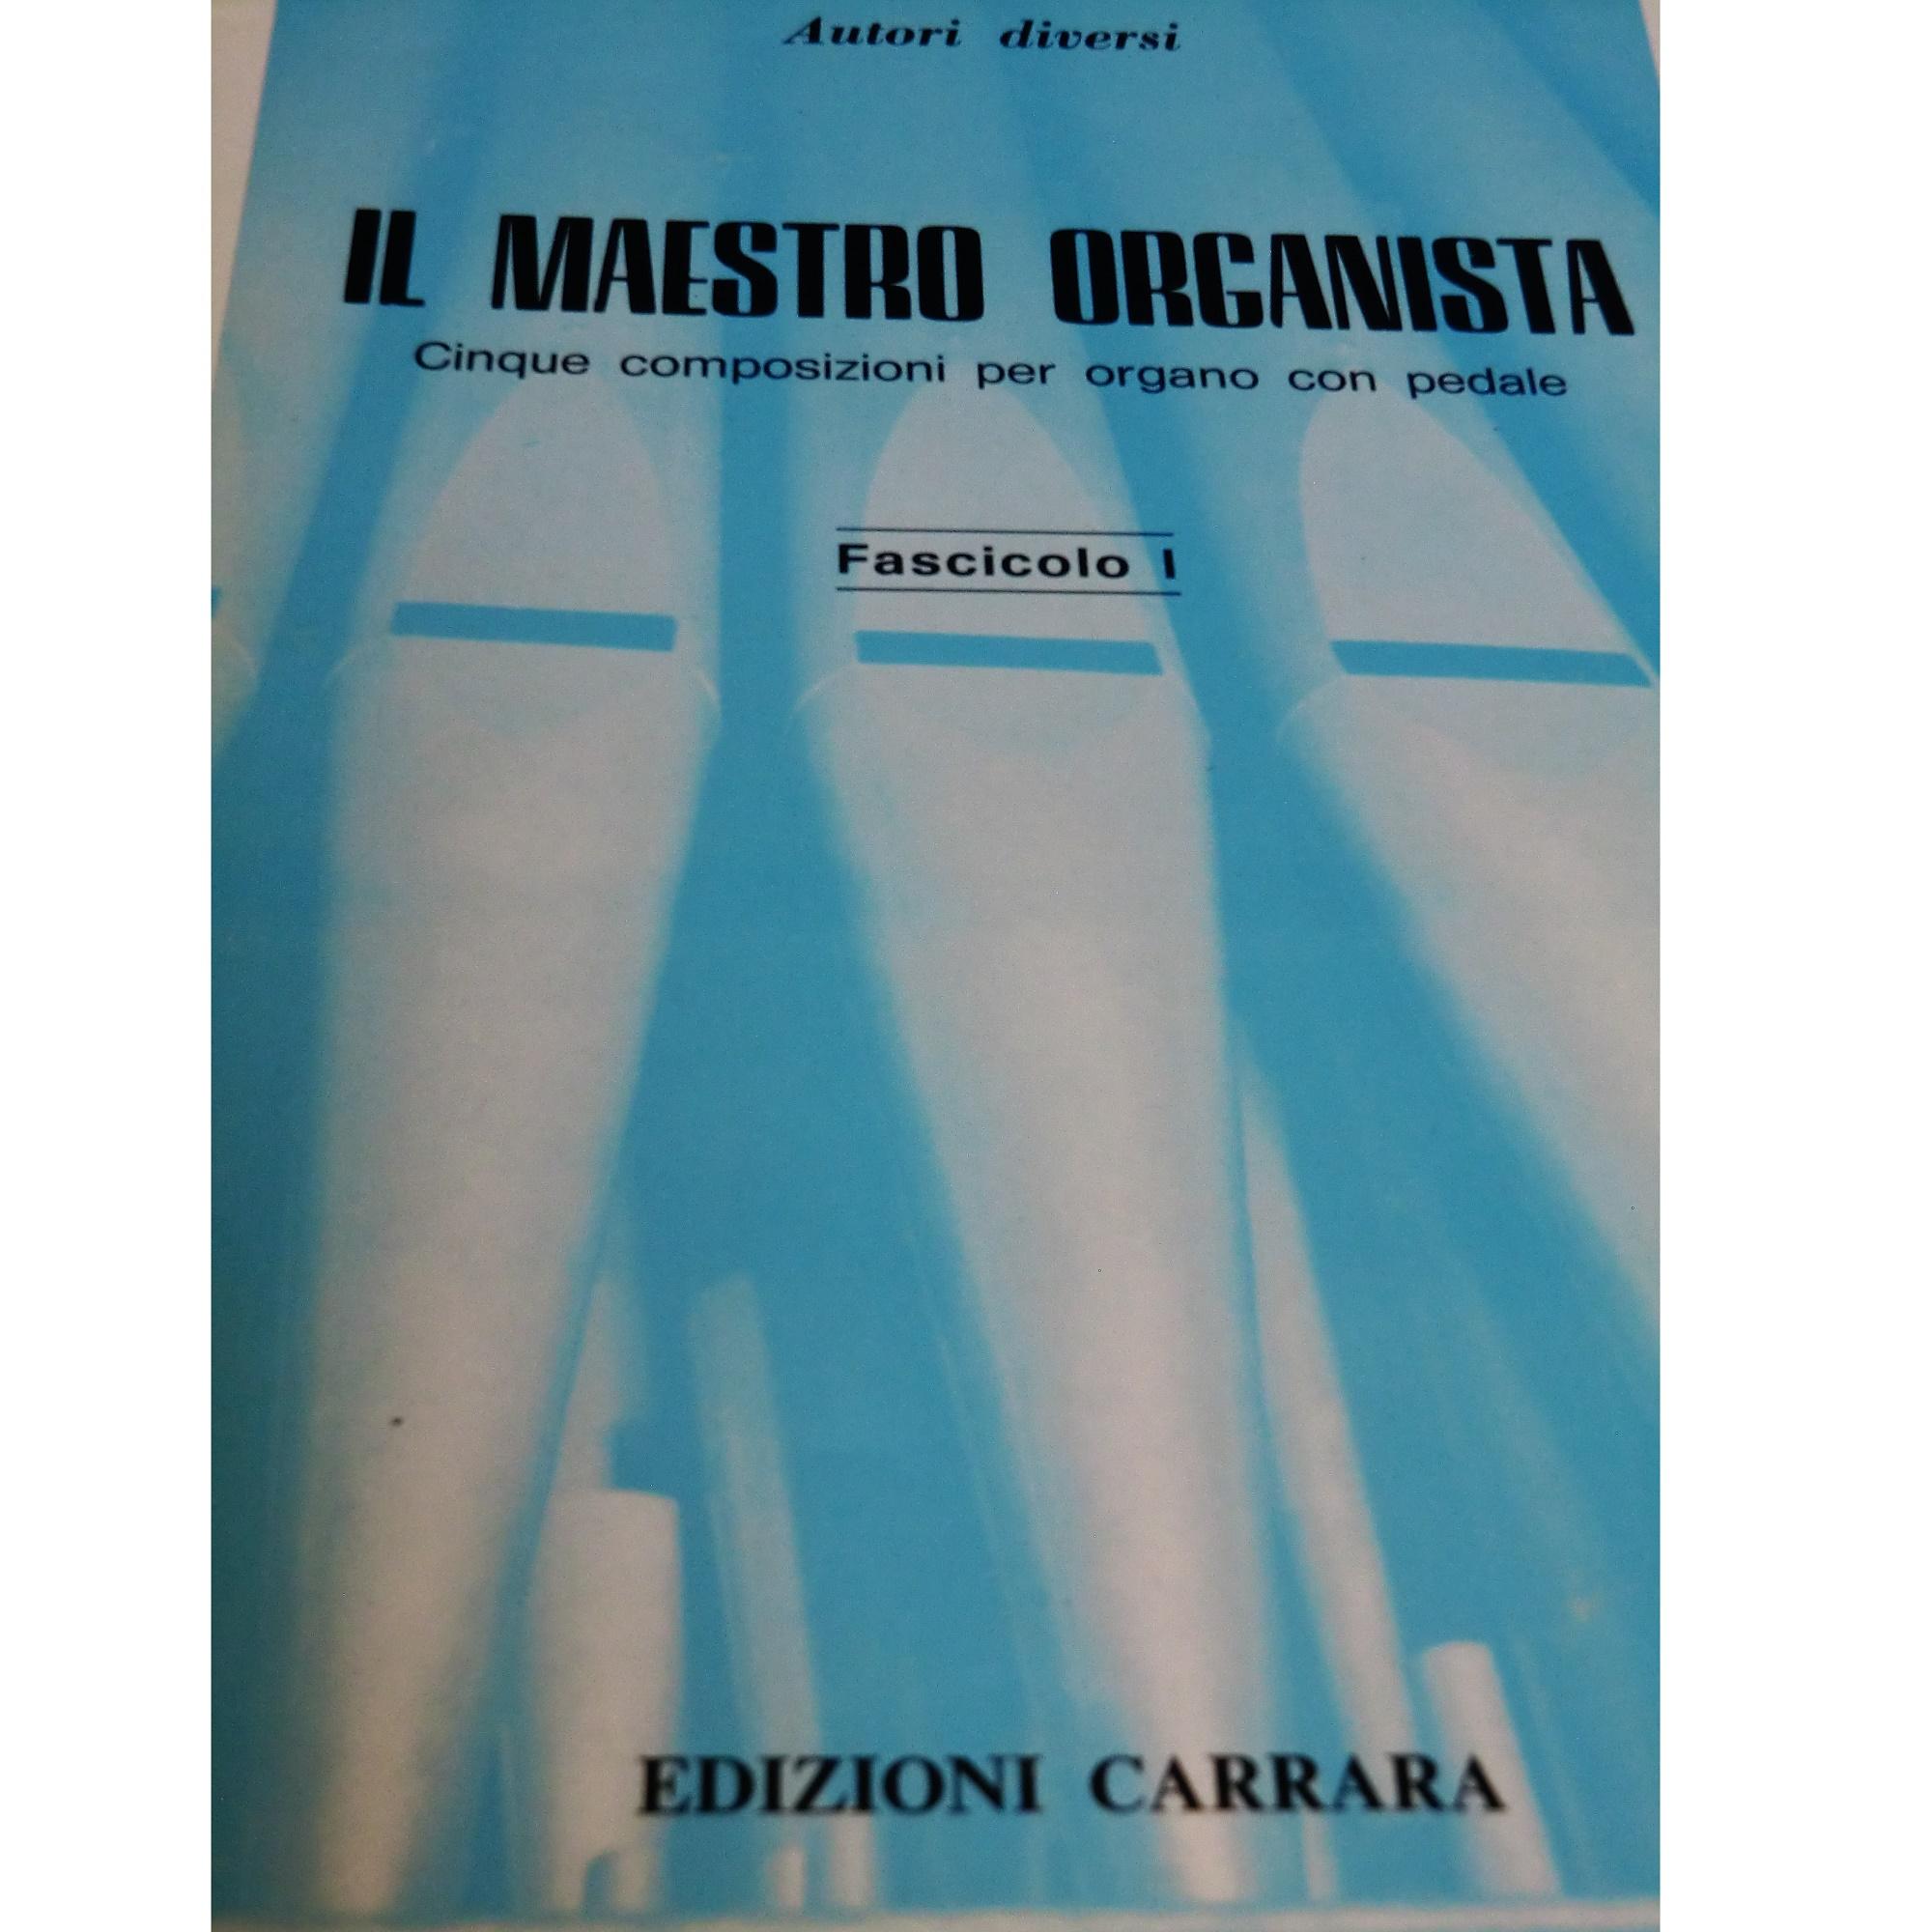 Il maestro organista cinque composizioni per organo con pedale Fascicolo I - Edizioni Carrara 